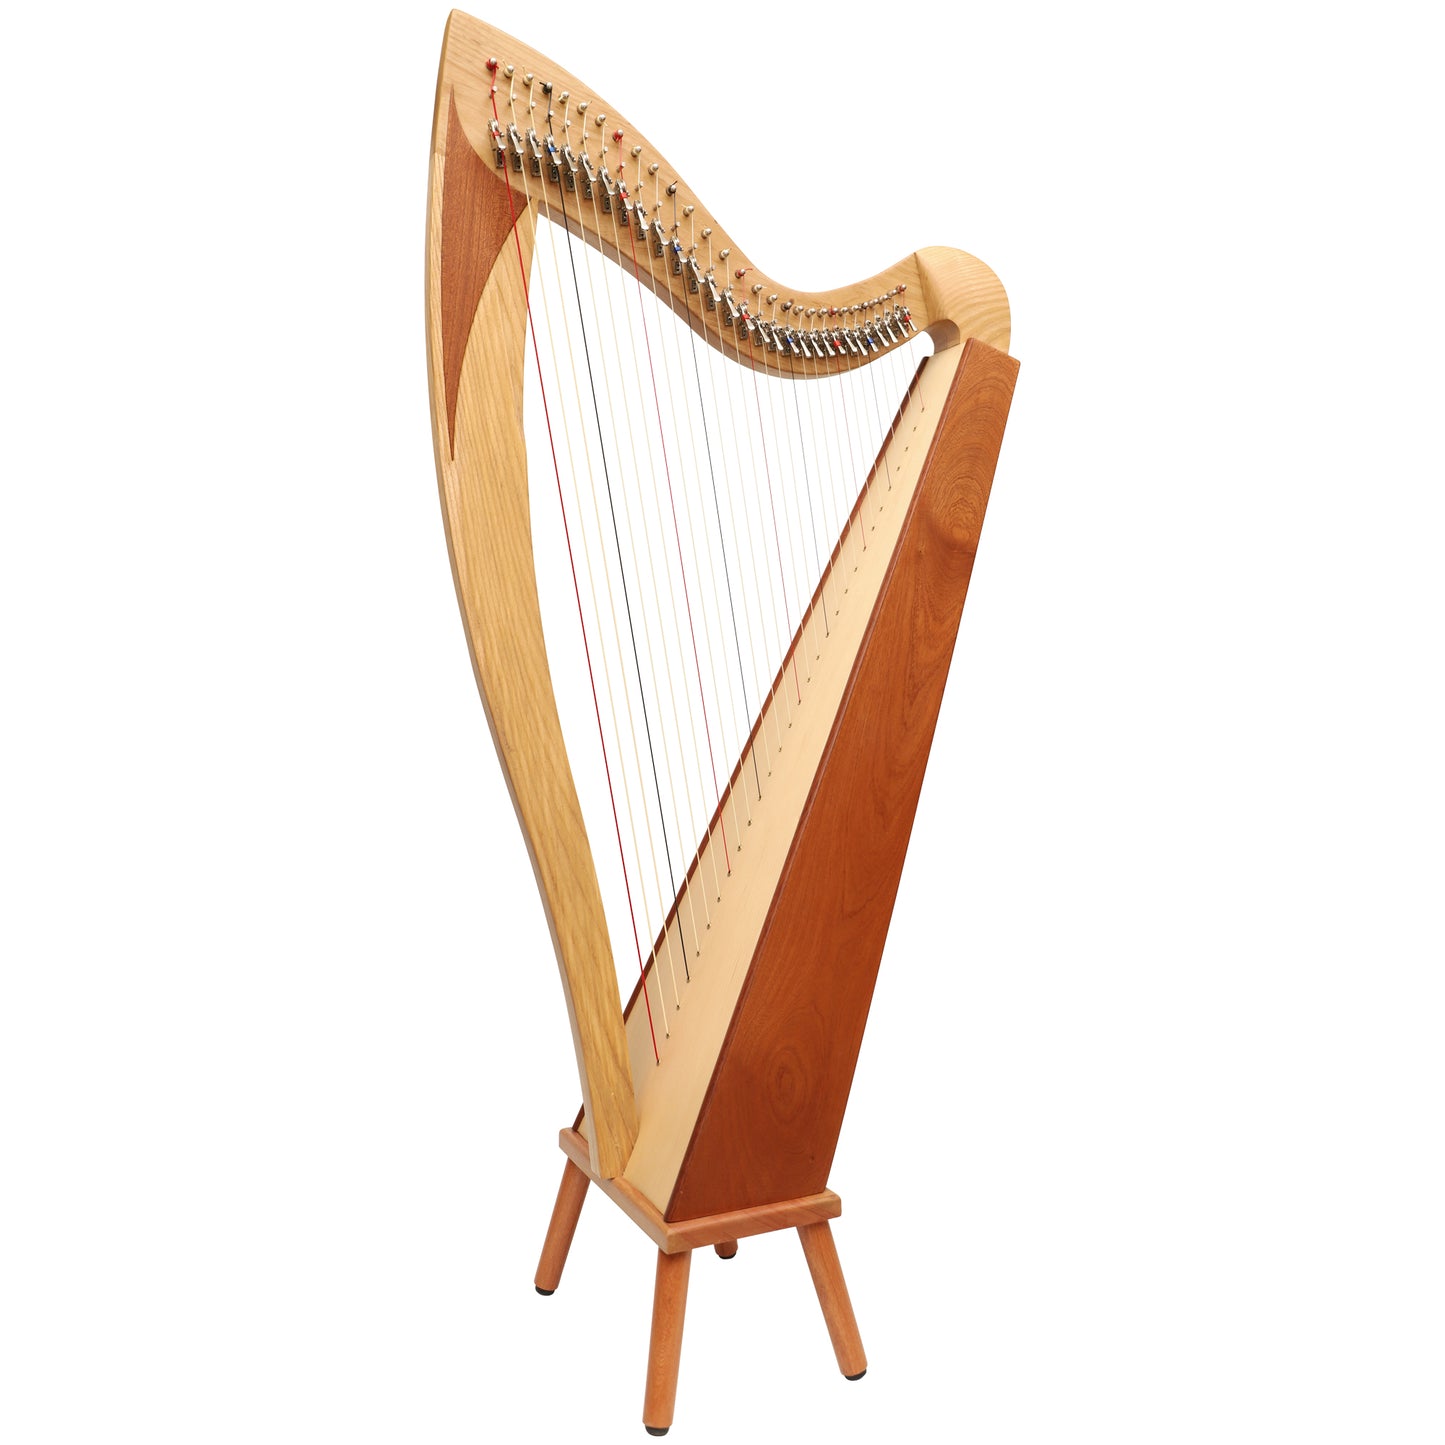 McHugh Atlas Harp 29 String Ash and Mahogany Squareback